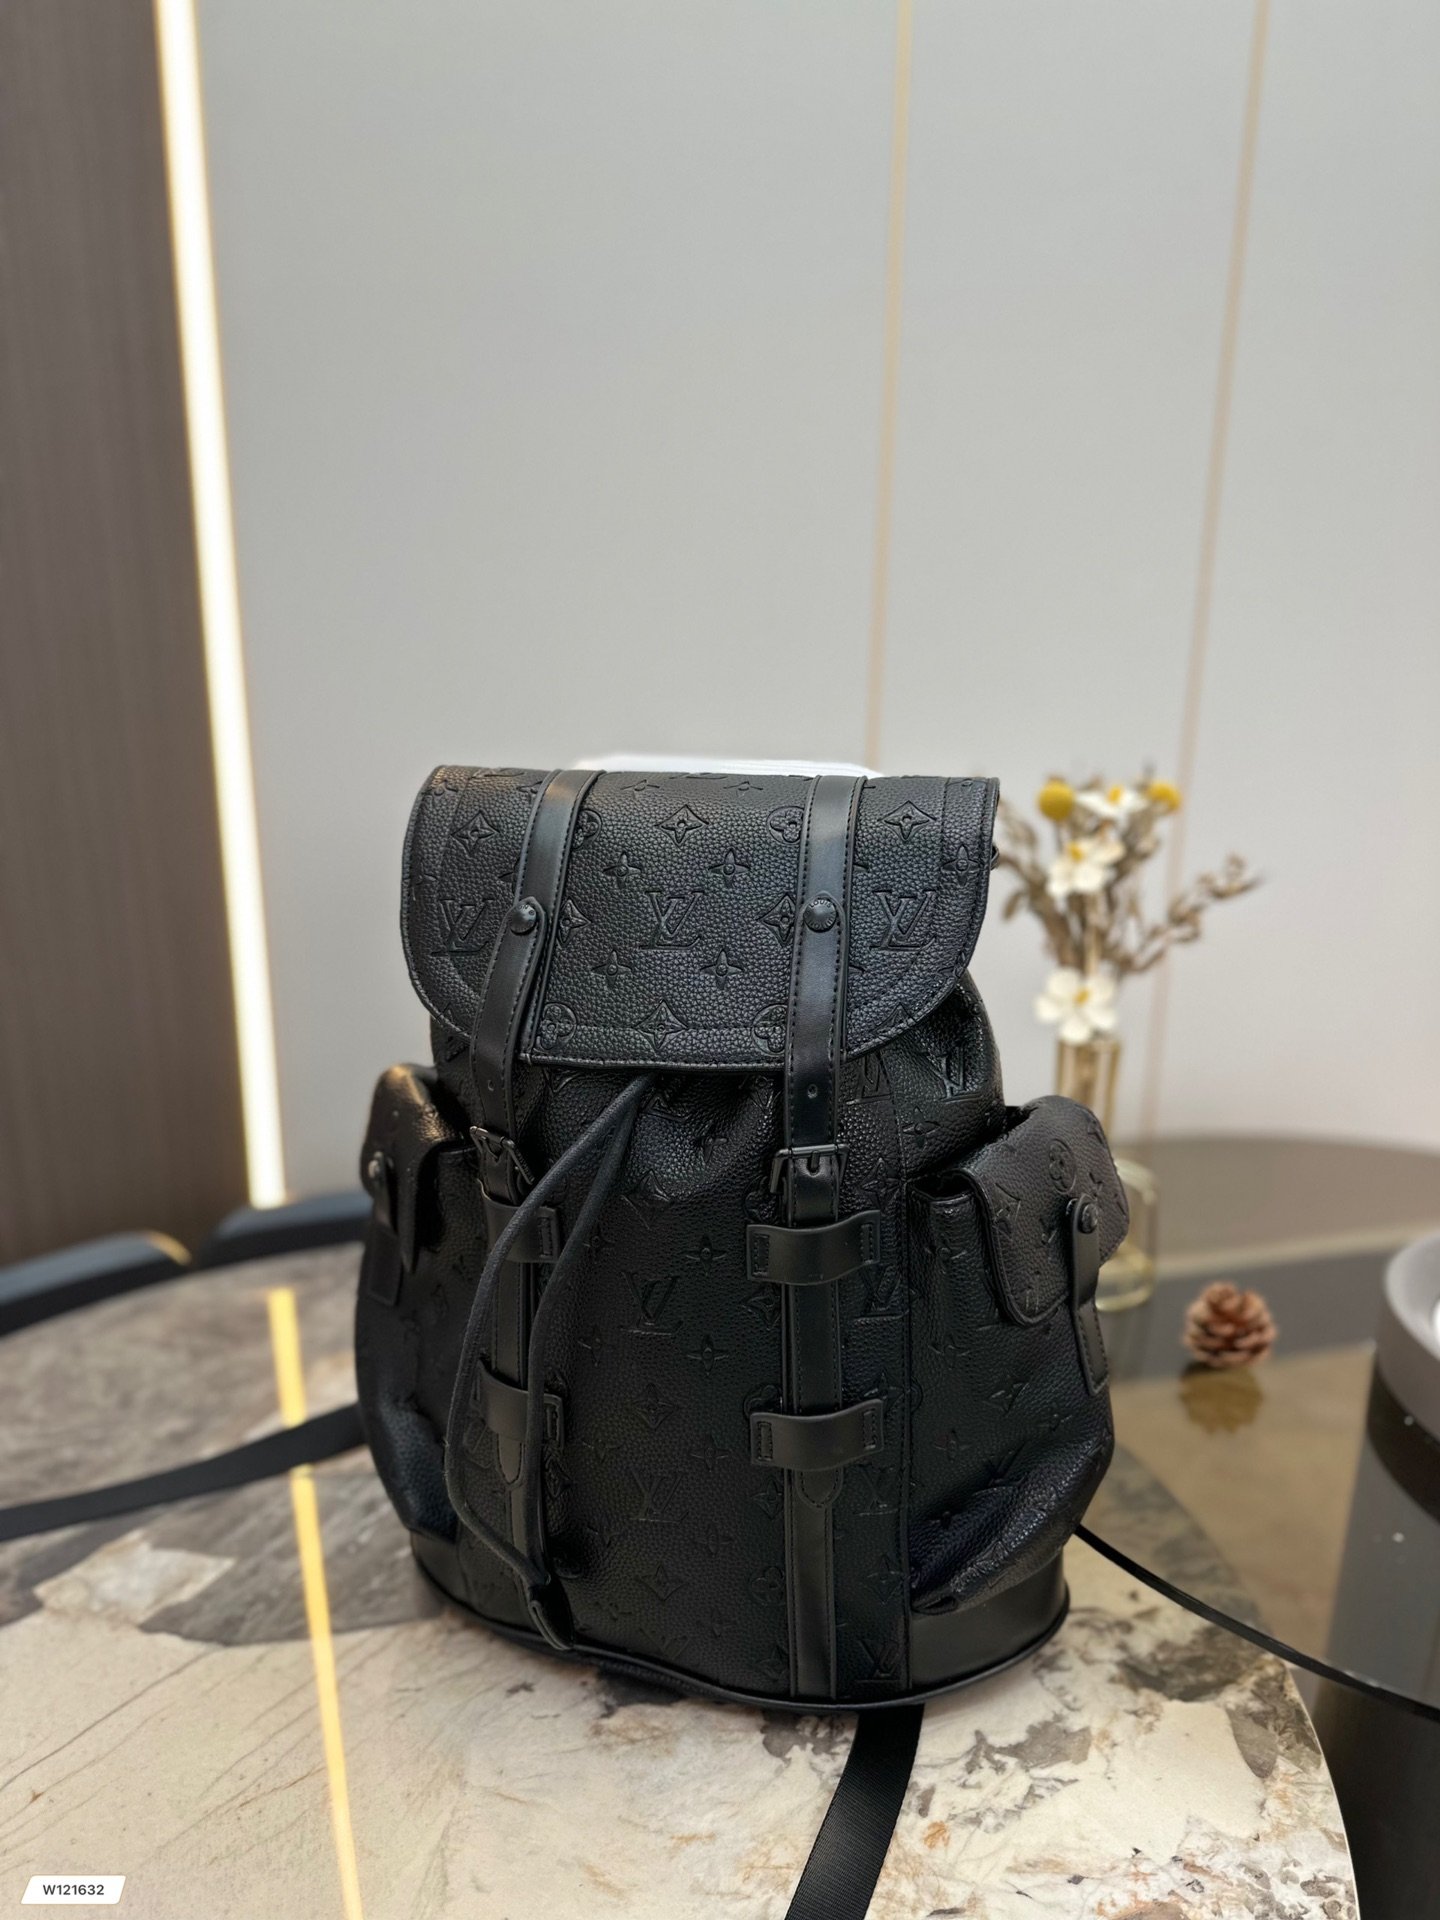 christopher backpack black